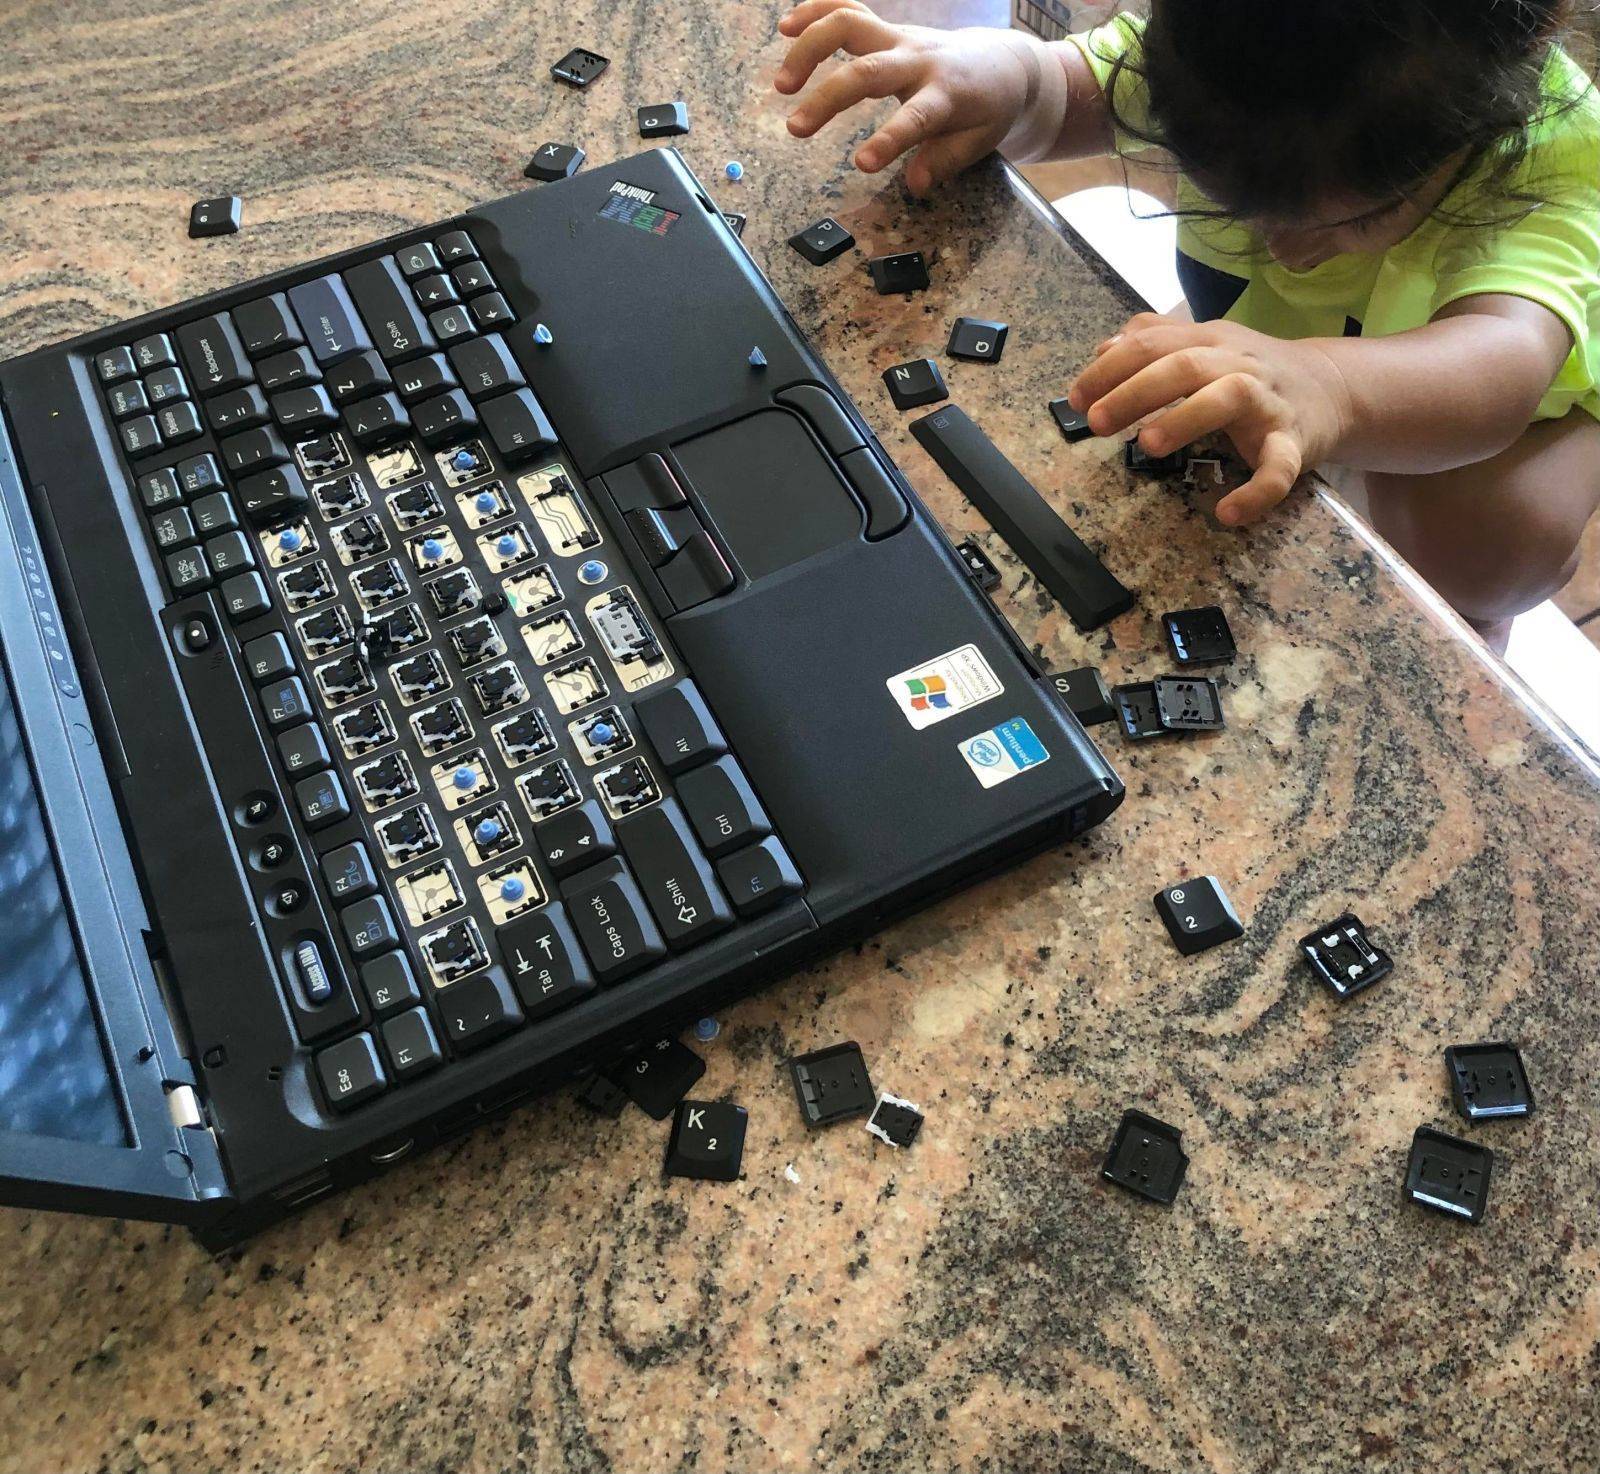 Un enfant retire les touches de l'ordinateur portable